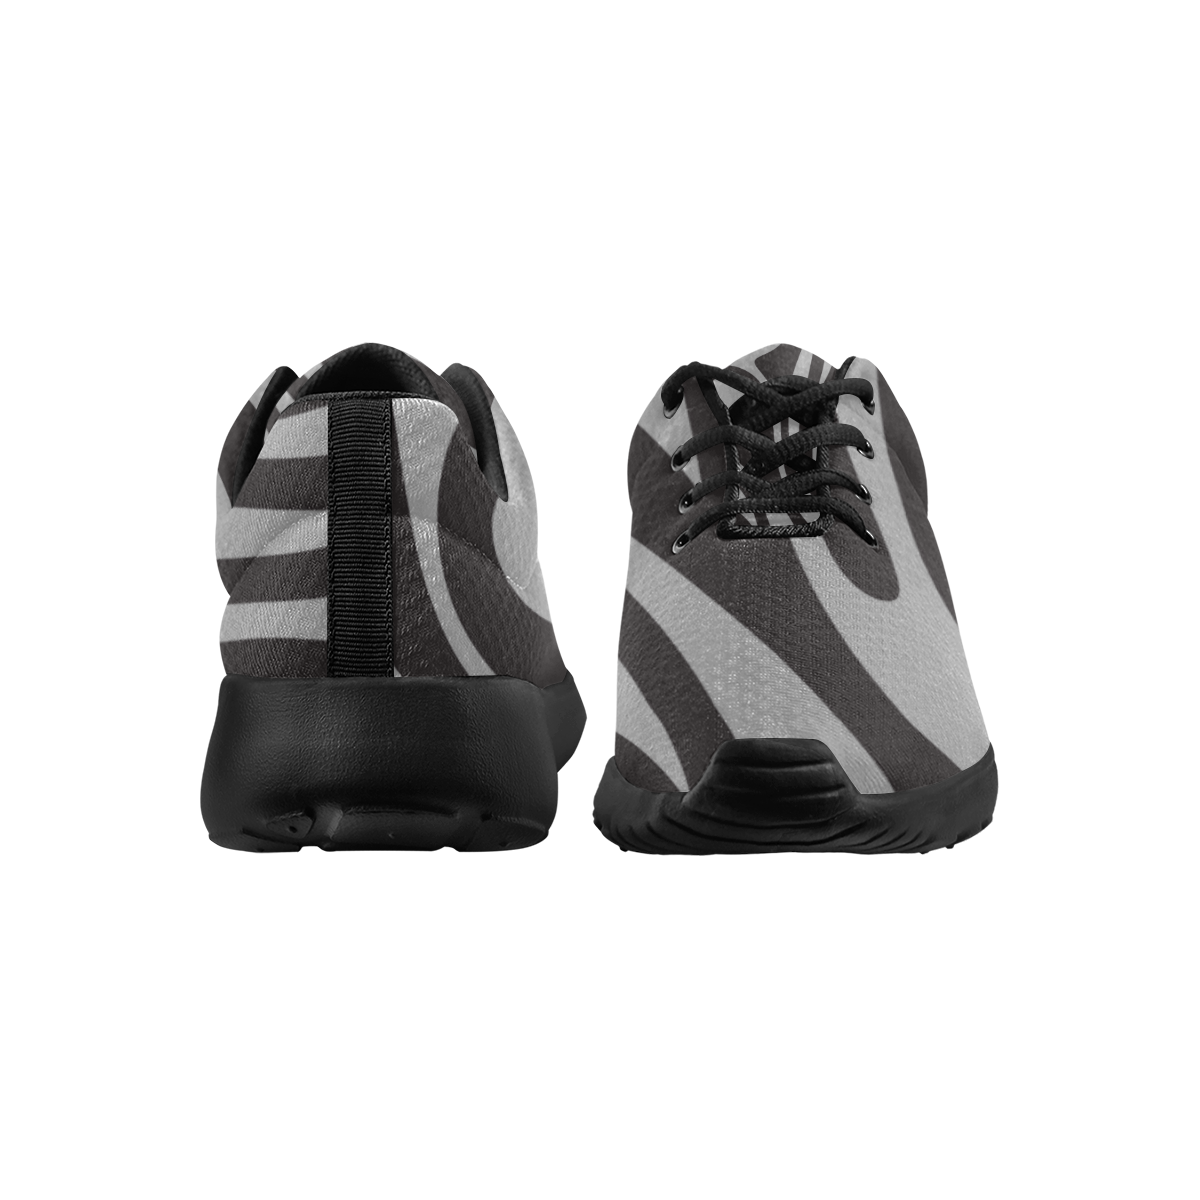 deportivas de mujer en gris y negro Women's Athletic Shoes (Model 0200)